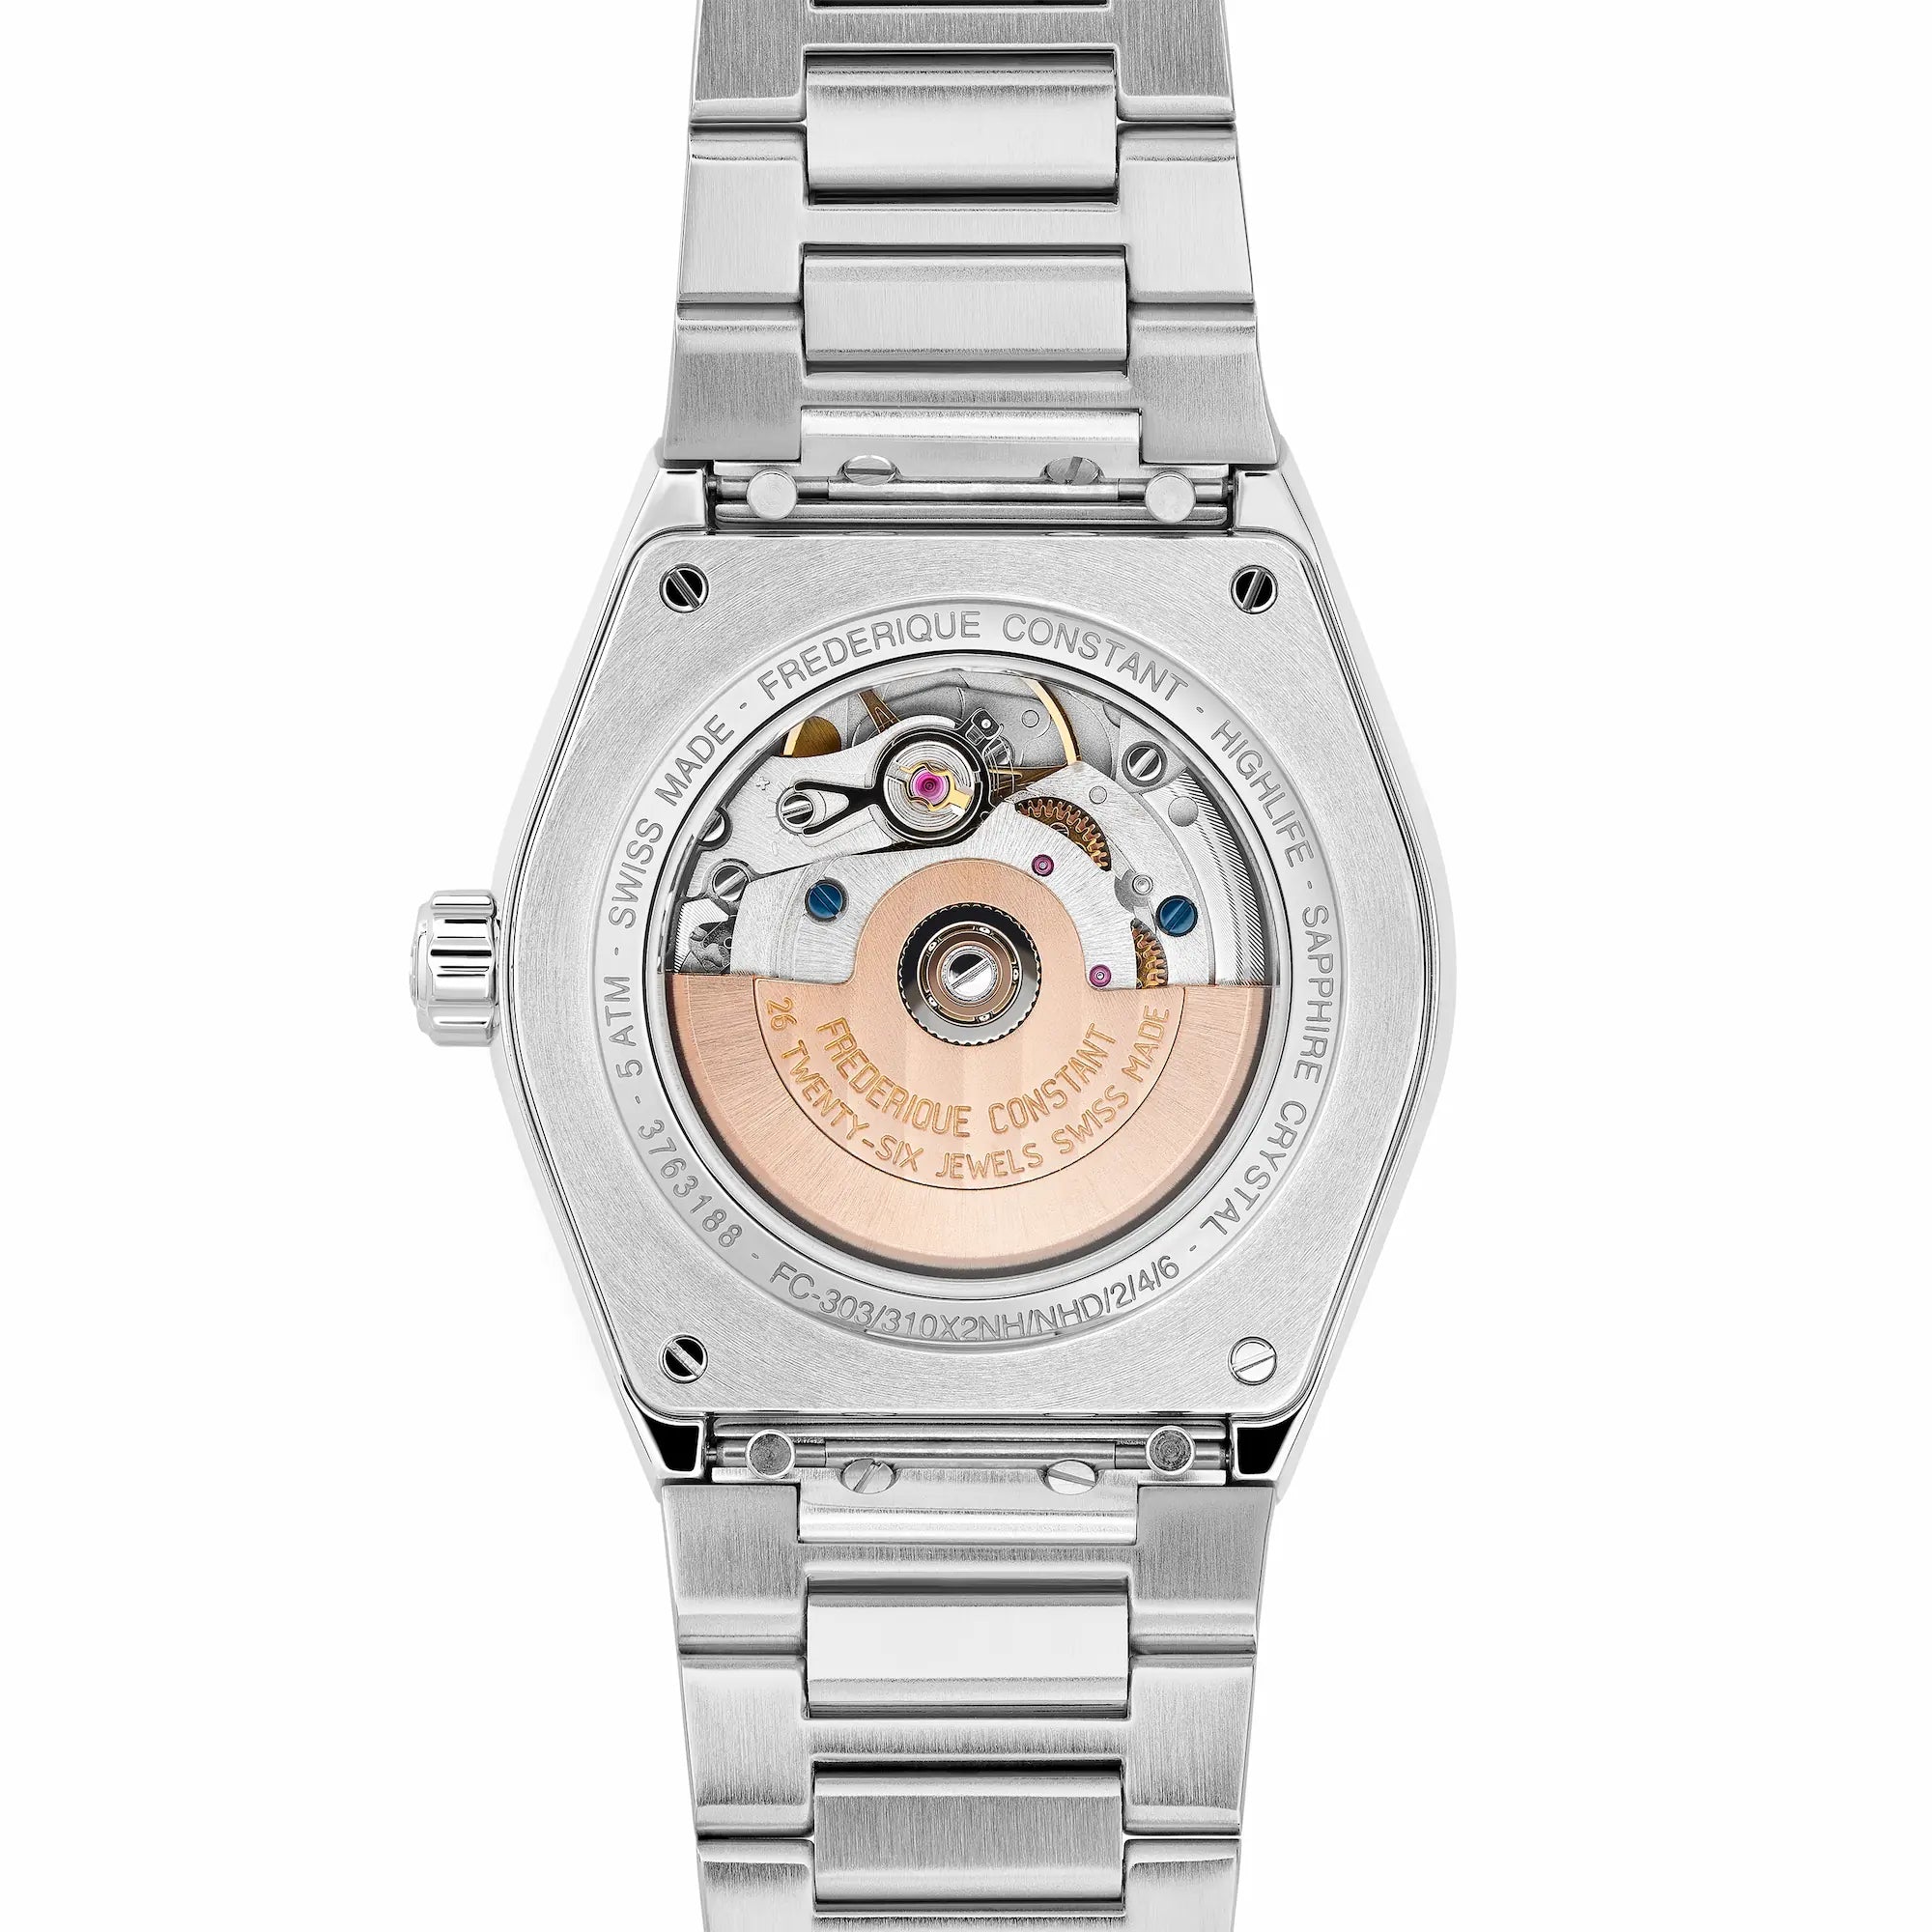 Rückseite der Frederique Constant Uhr "Highlife Ladies Automatic" mit einem schwarzen Zifferblatt mit Diamant-Indizes und Edelstahl-Gehäuse mit Blick auf das Uhrwerk